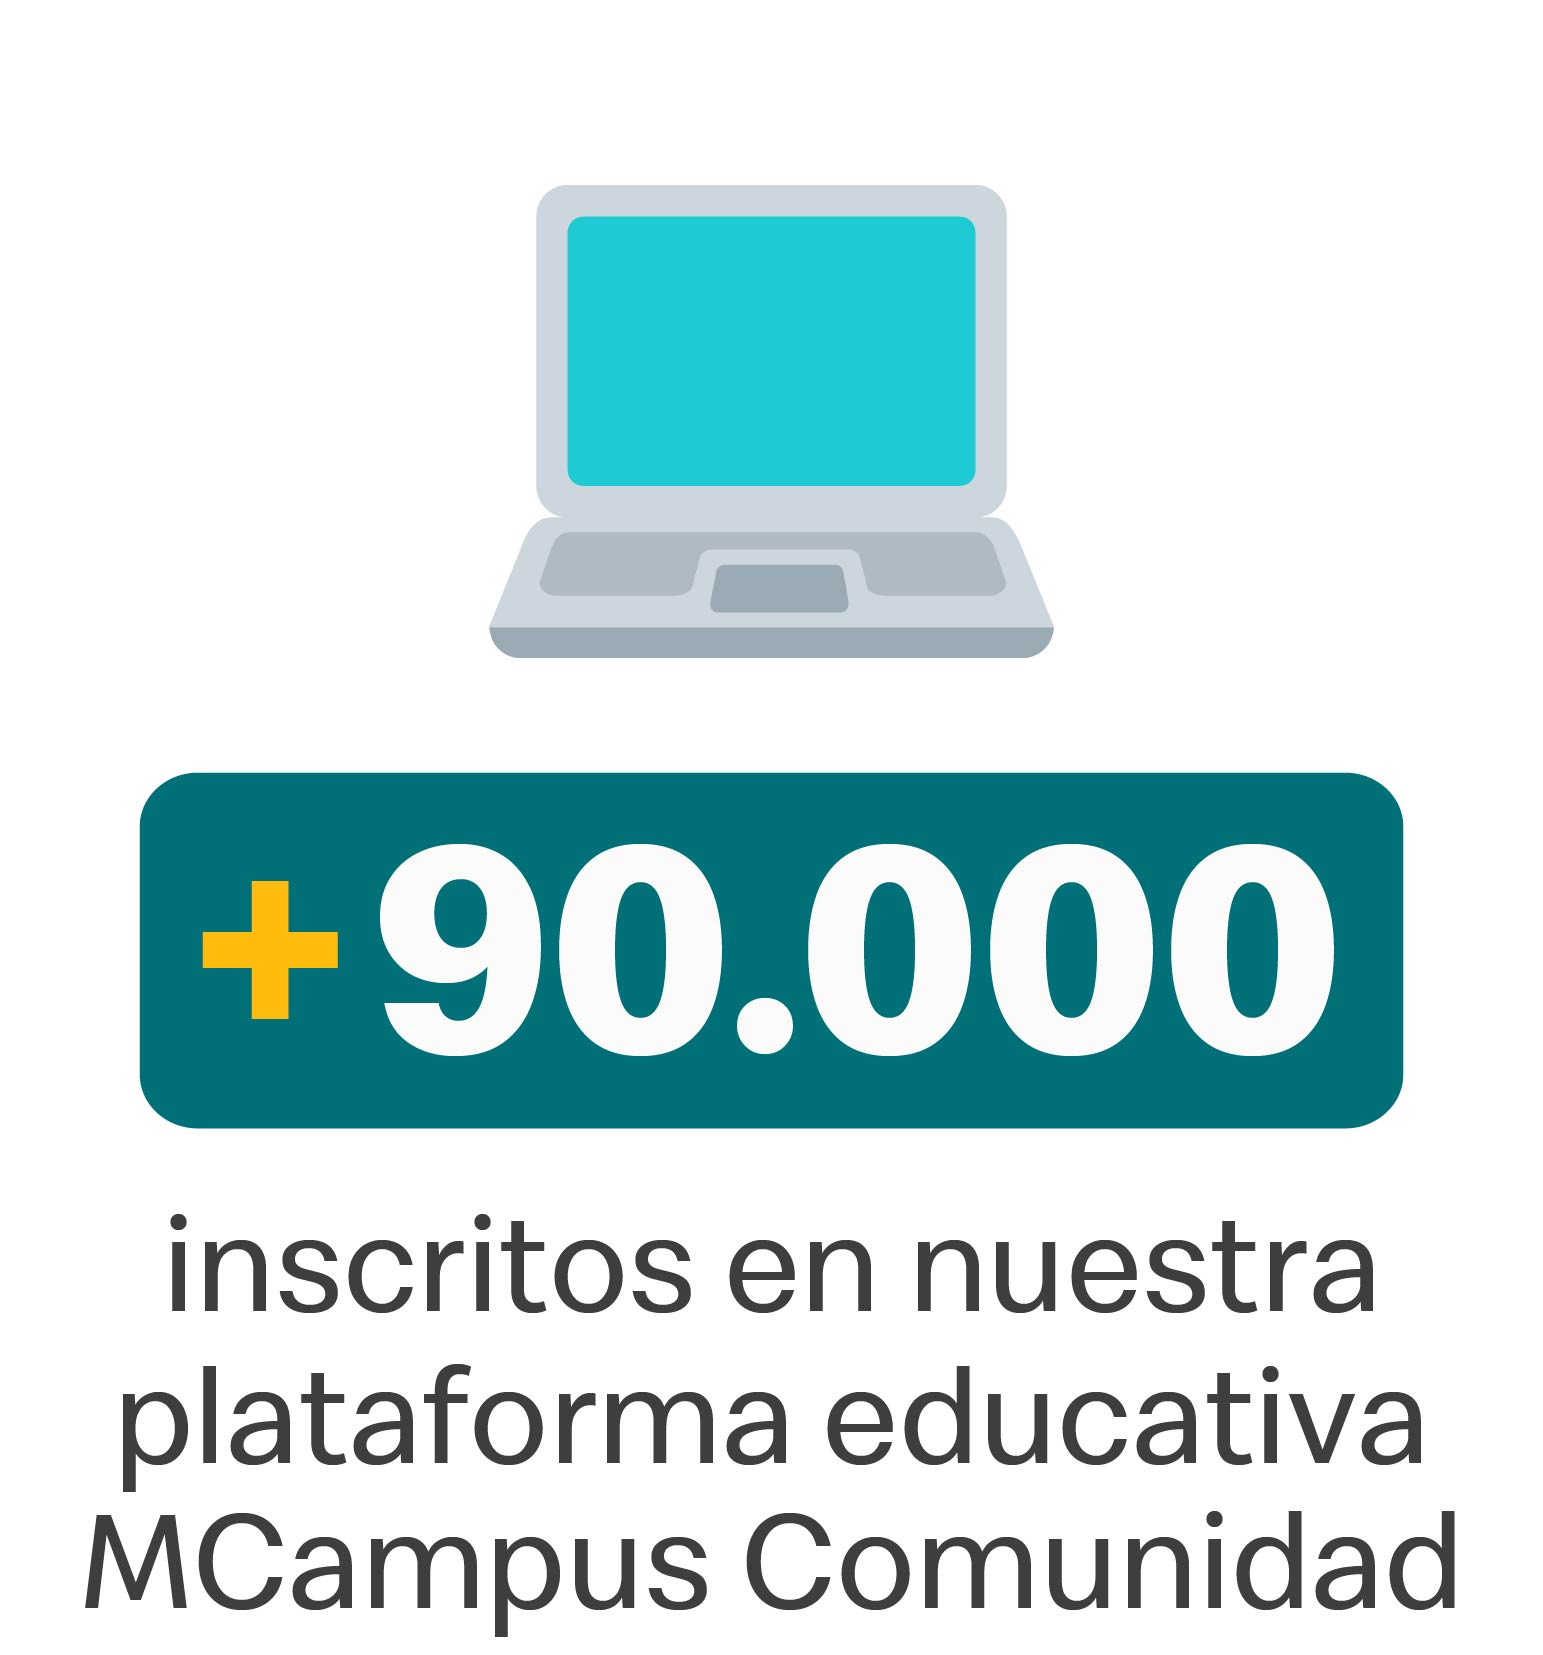 90.000 inscritos en nuestra plataforma educativa MCampus Comunidad